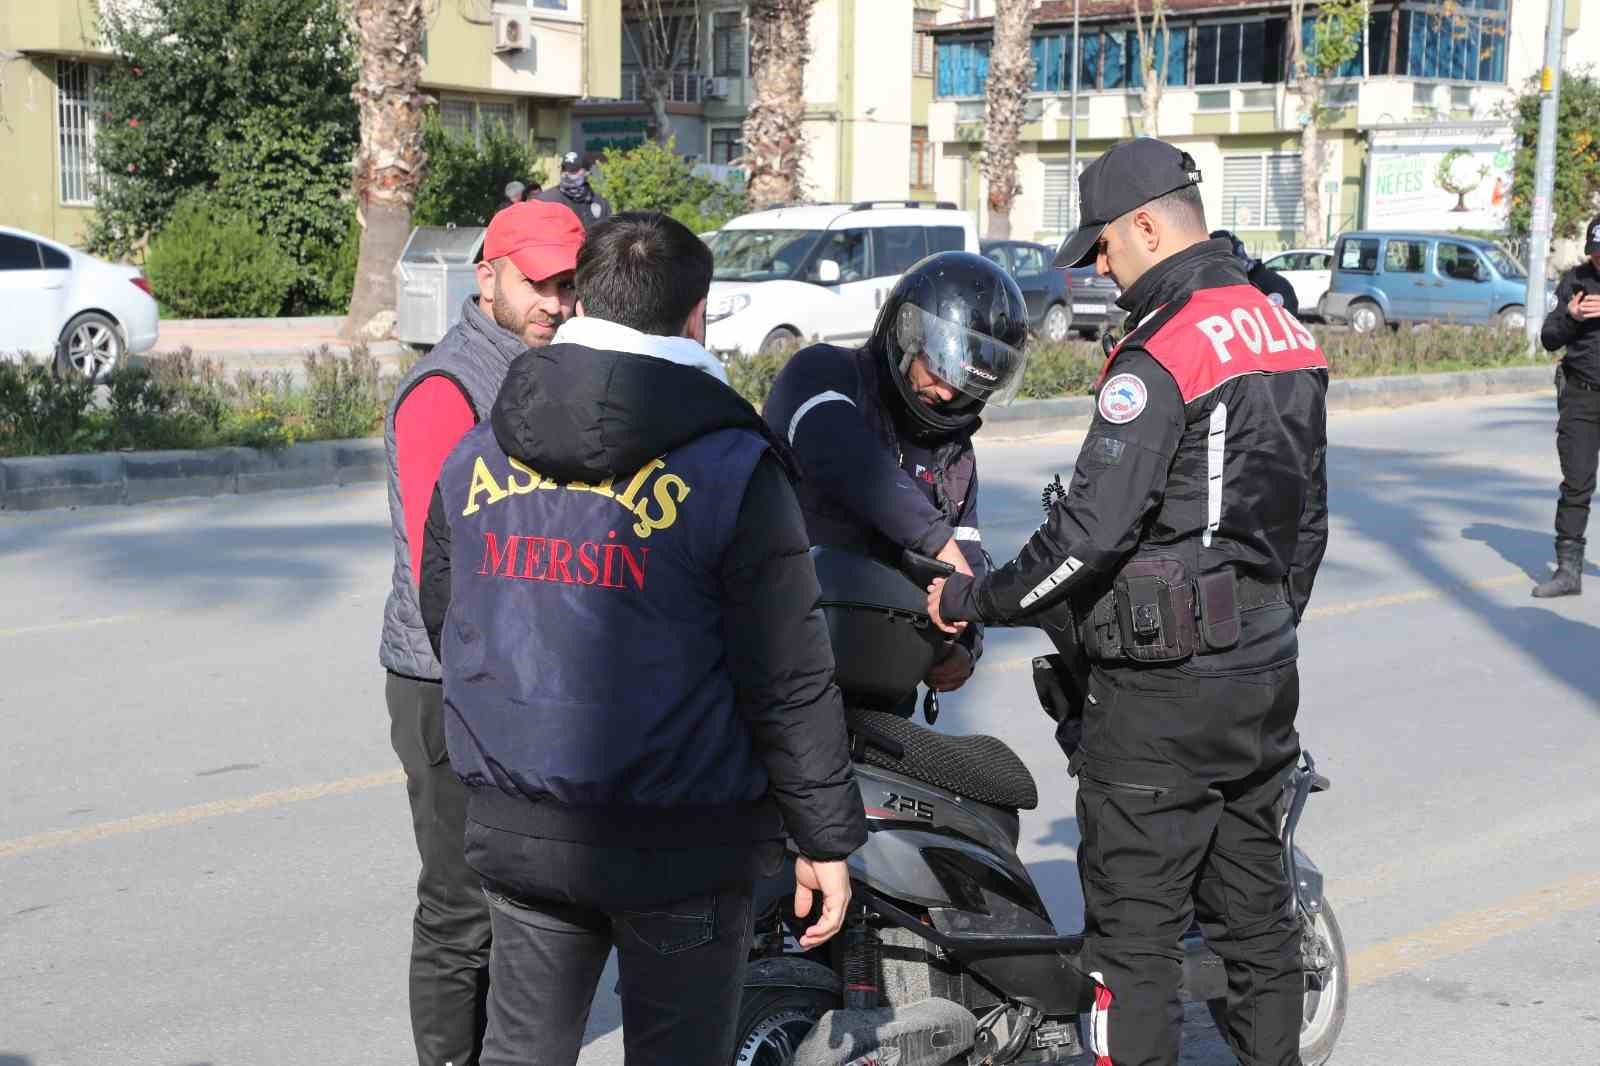 Mersin’de polisten şaşırtıcı operasyon: 8 çalıntı motosiklet bulundu, 13 kişi gözaltına alındı